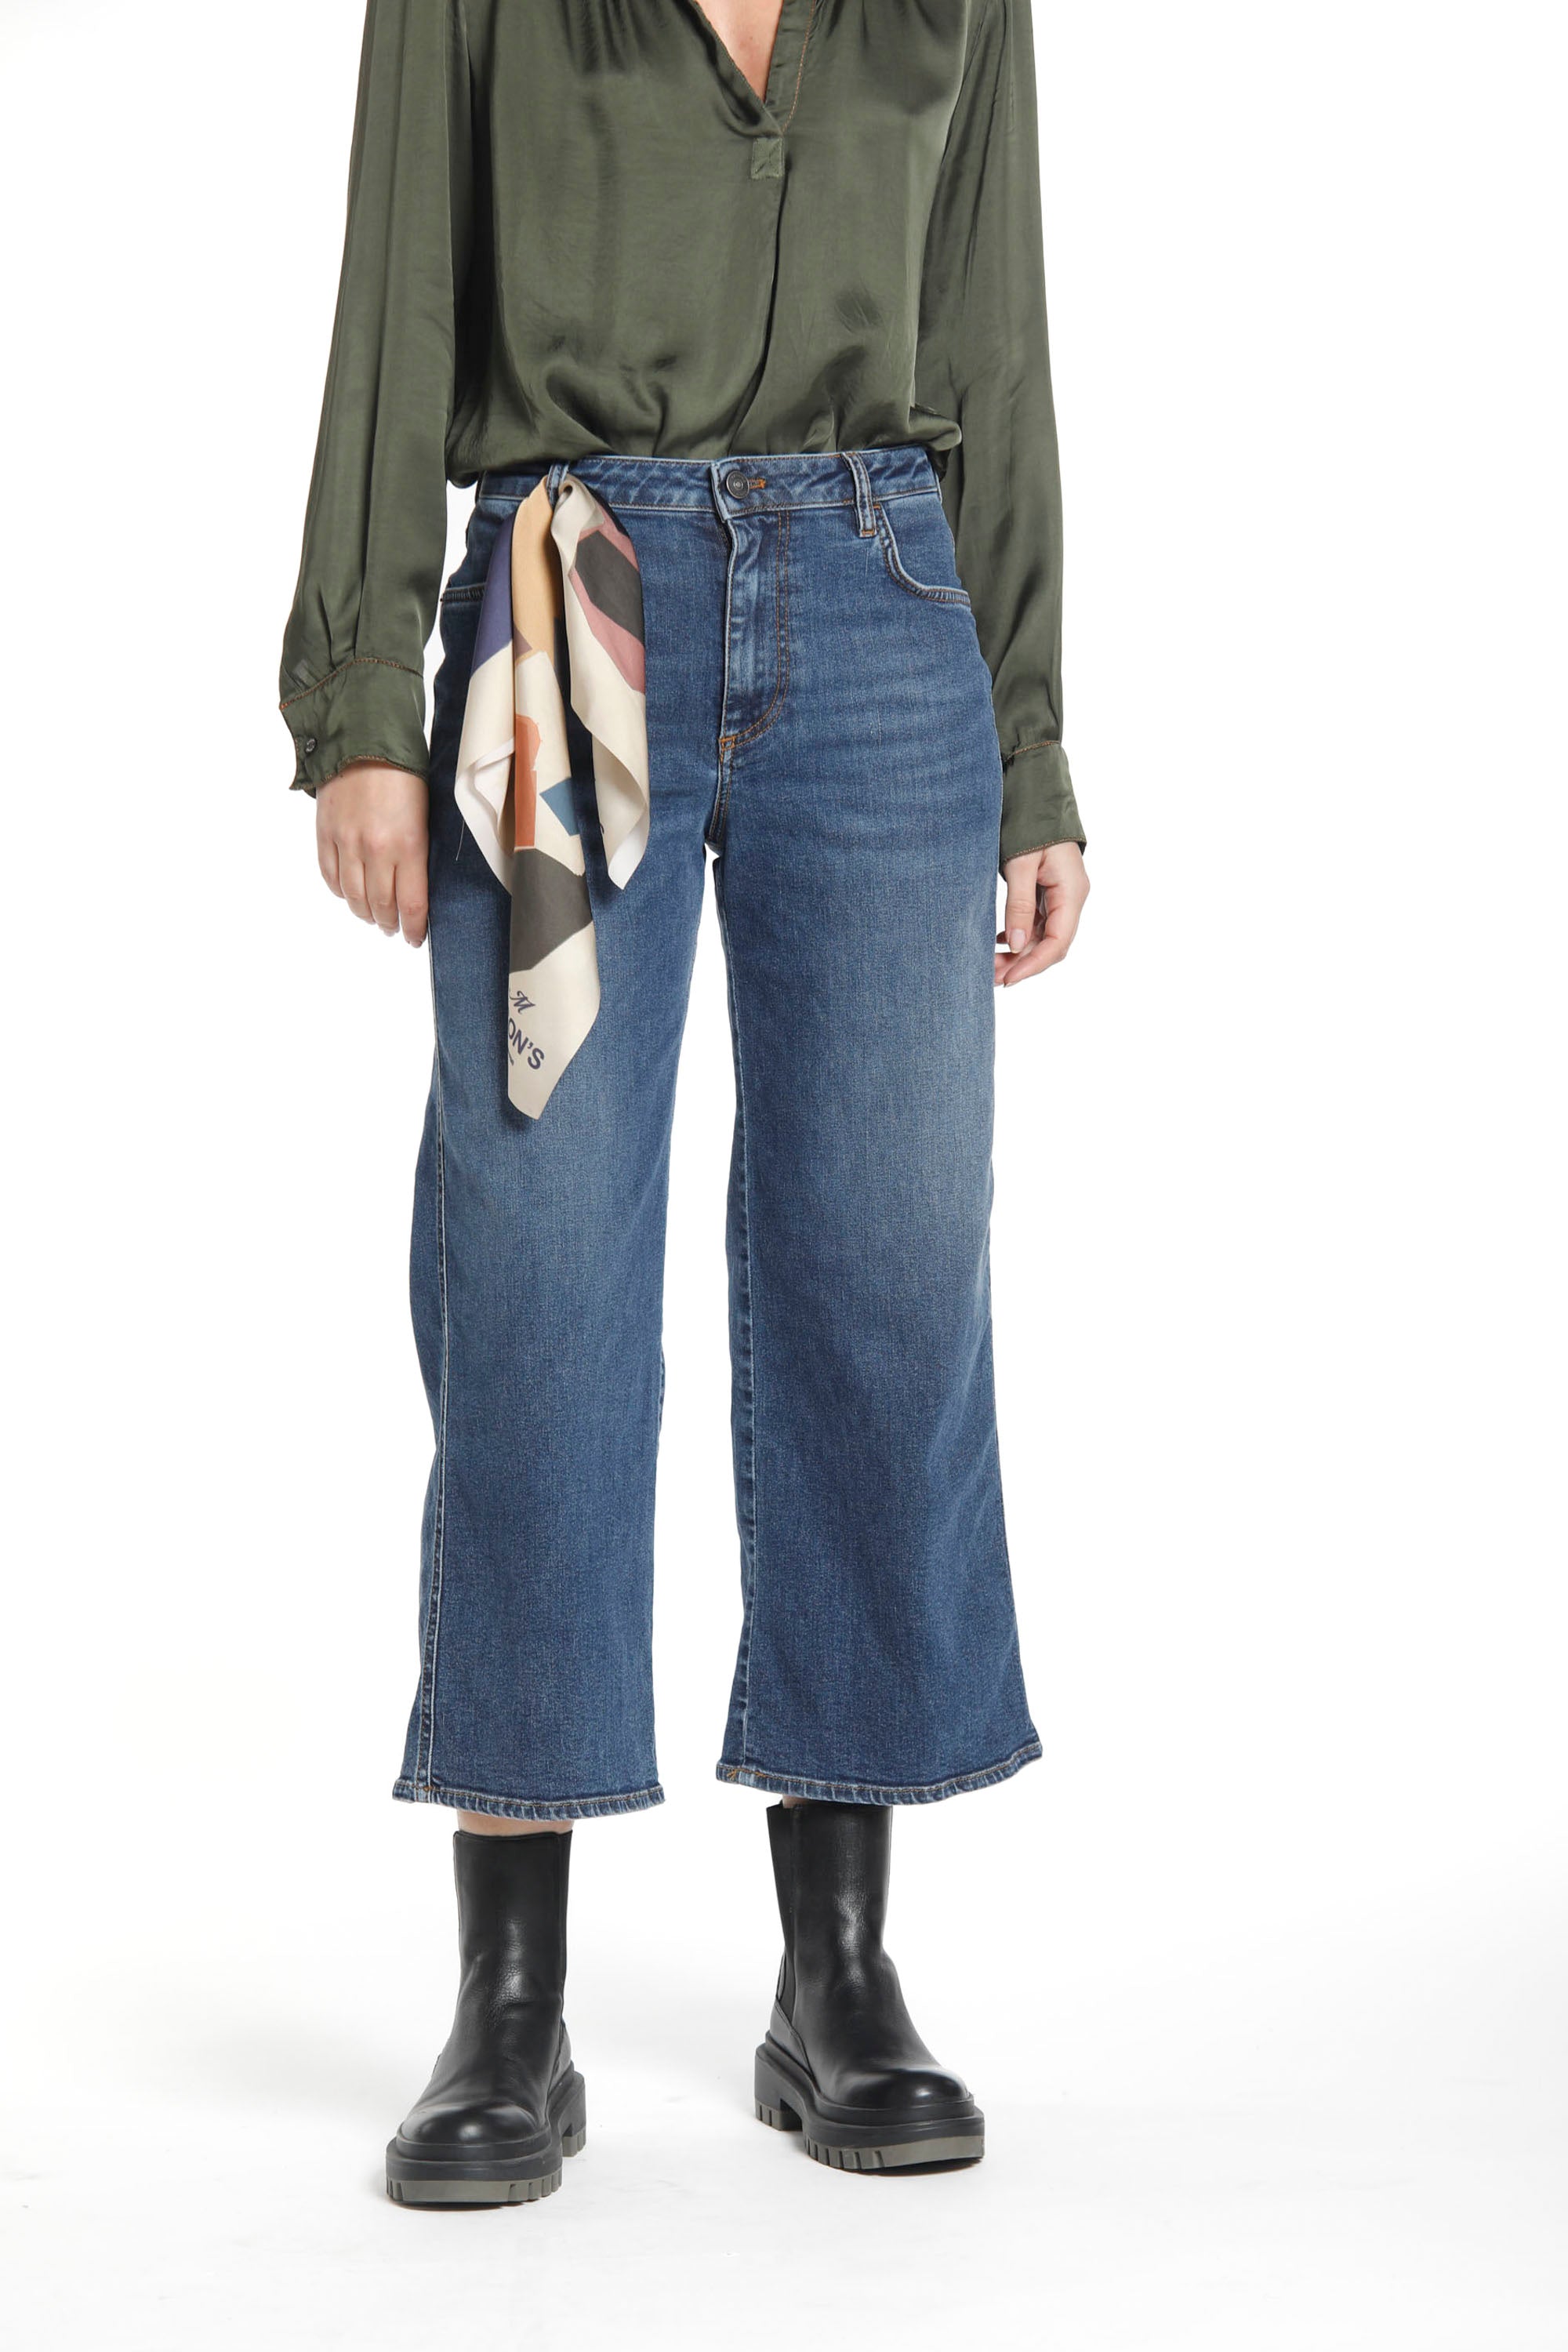 Image 1 de pantalon femme 5 poches en denim stretch couleur bleu marine modèle Samantha de Mason's